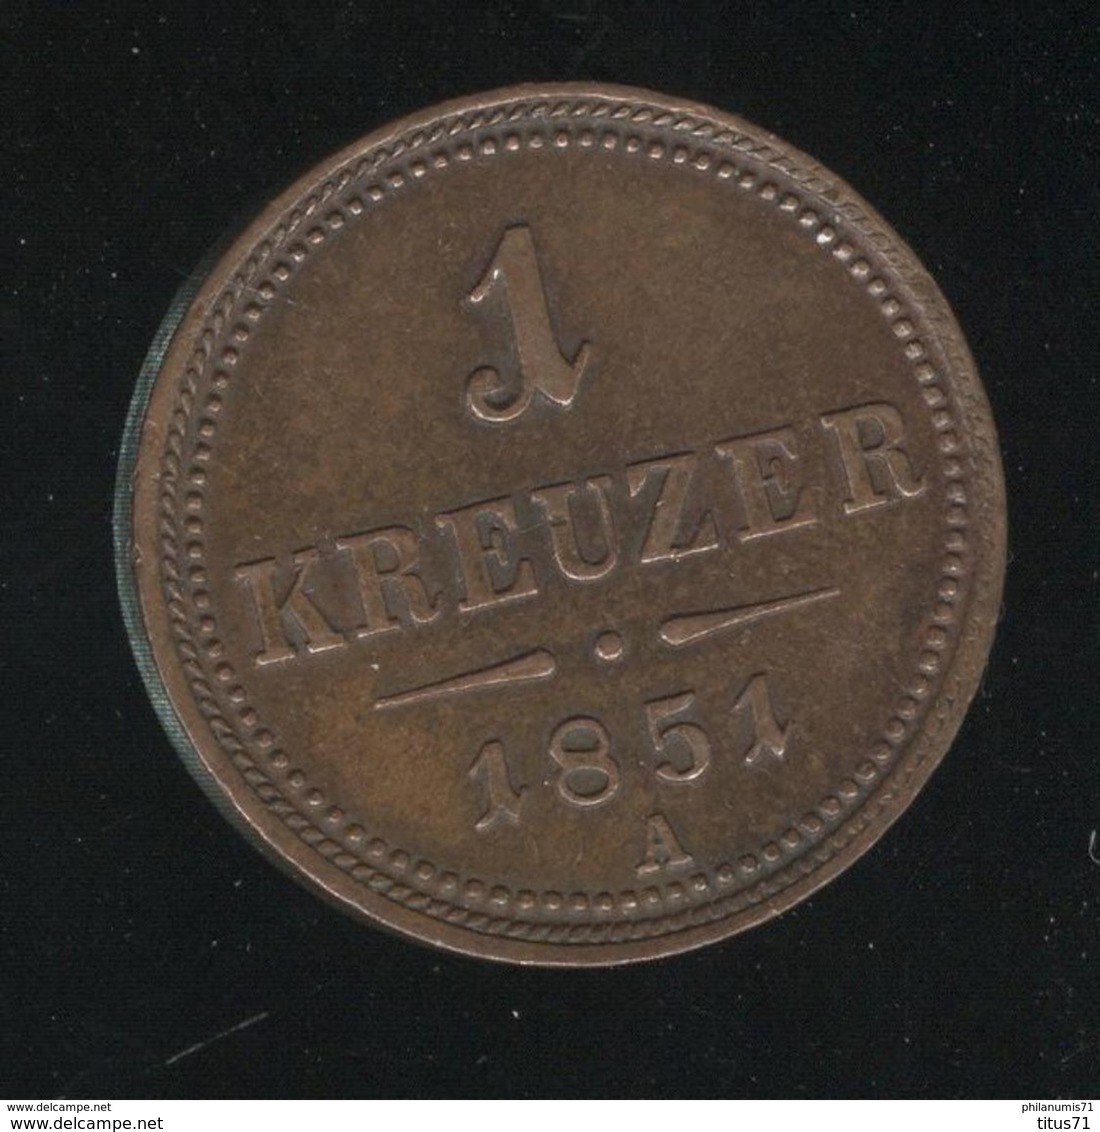 10 Kreuzer Autriche / Austria 1851 A - SUP ( Lot 3 ) - Autriche